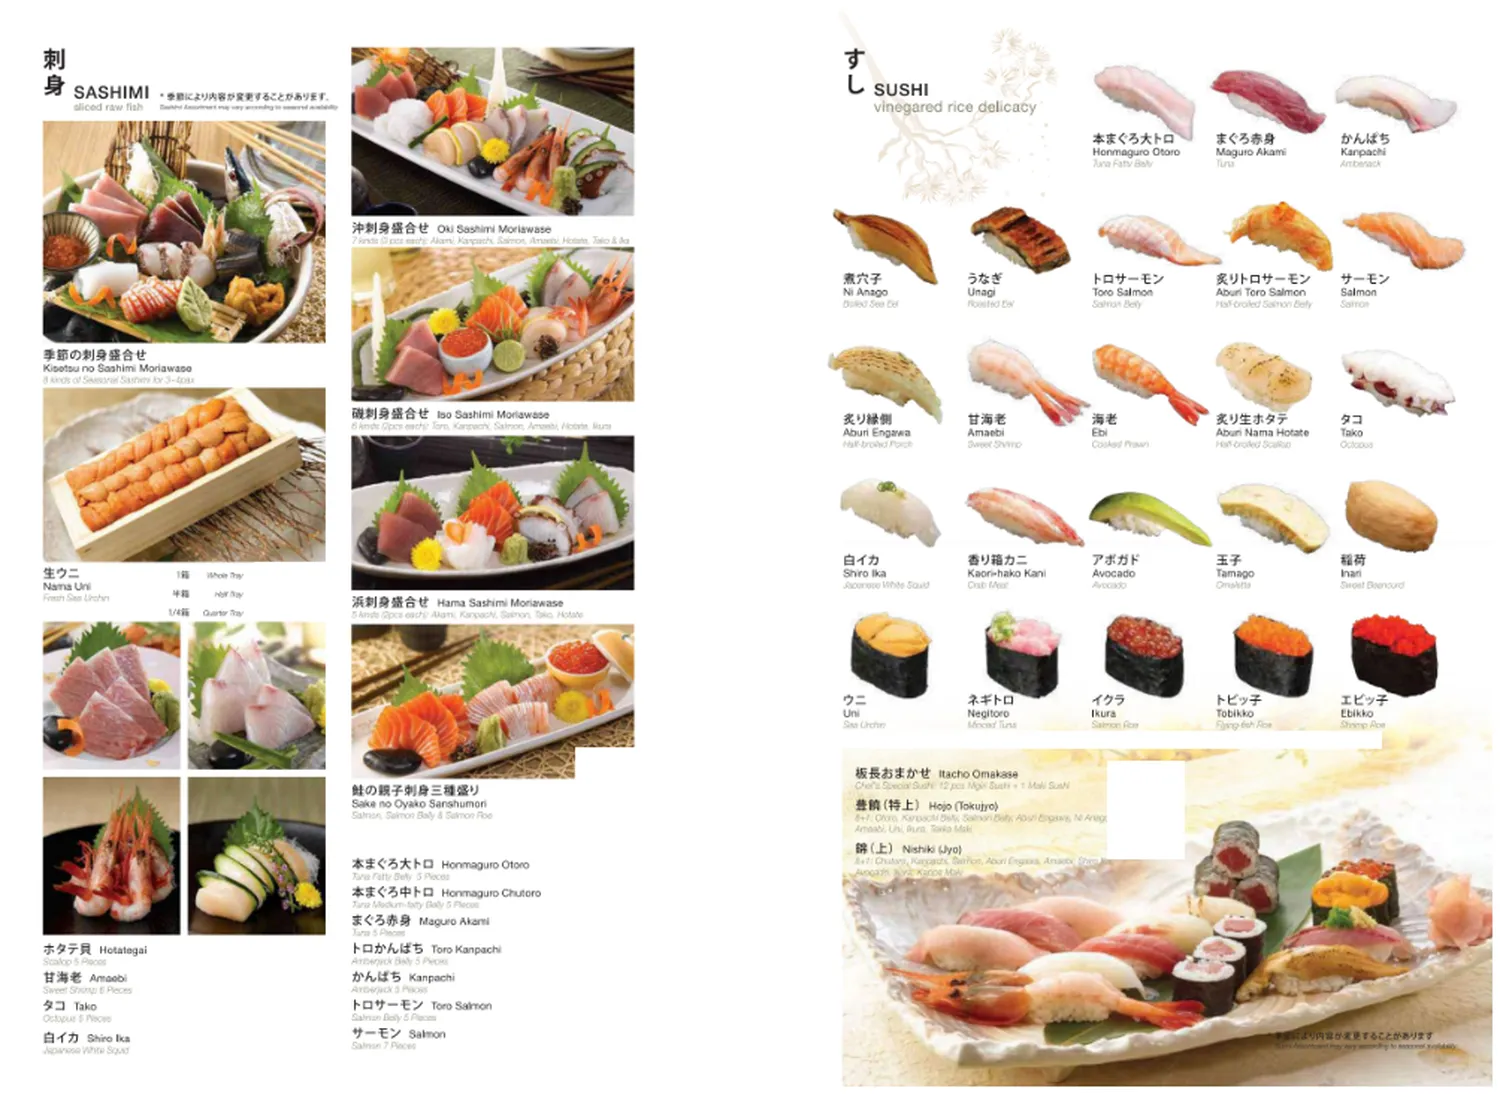 rakuzen menu malaysia sashimi or sliced raw fish 1